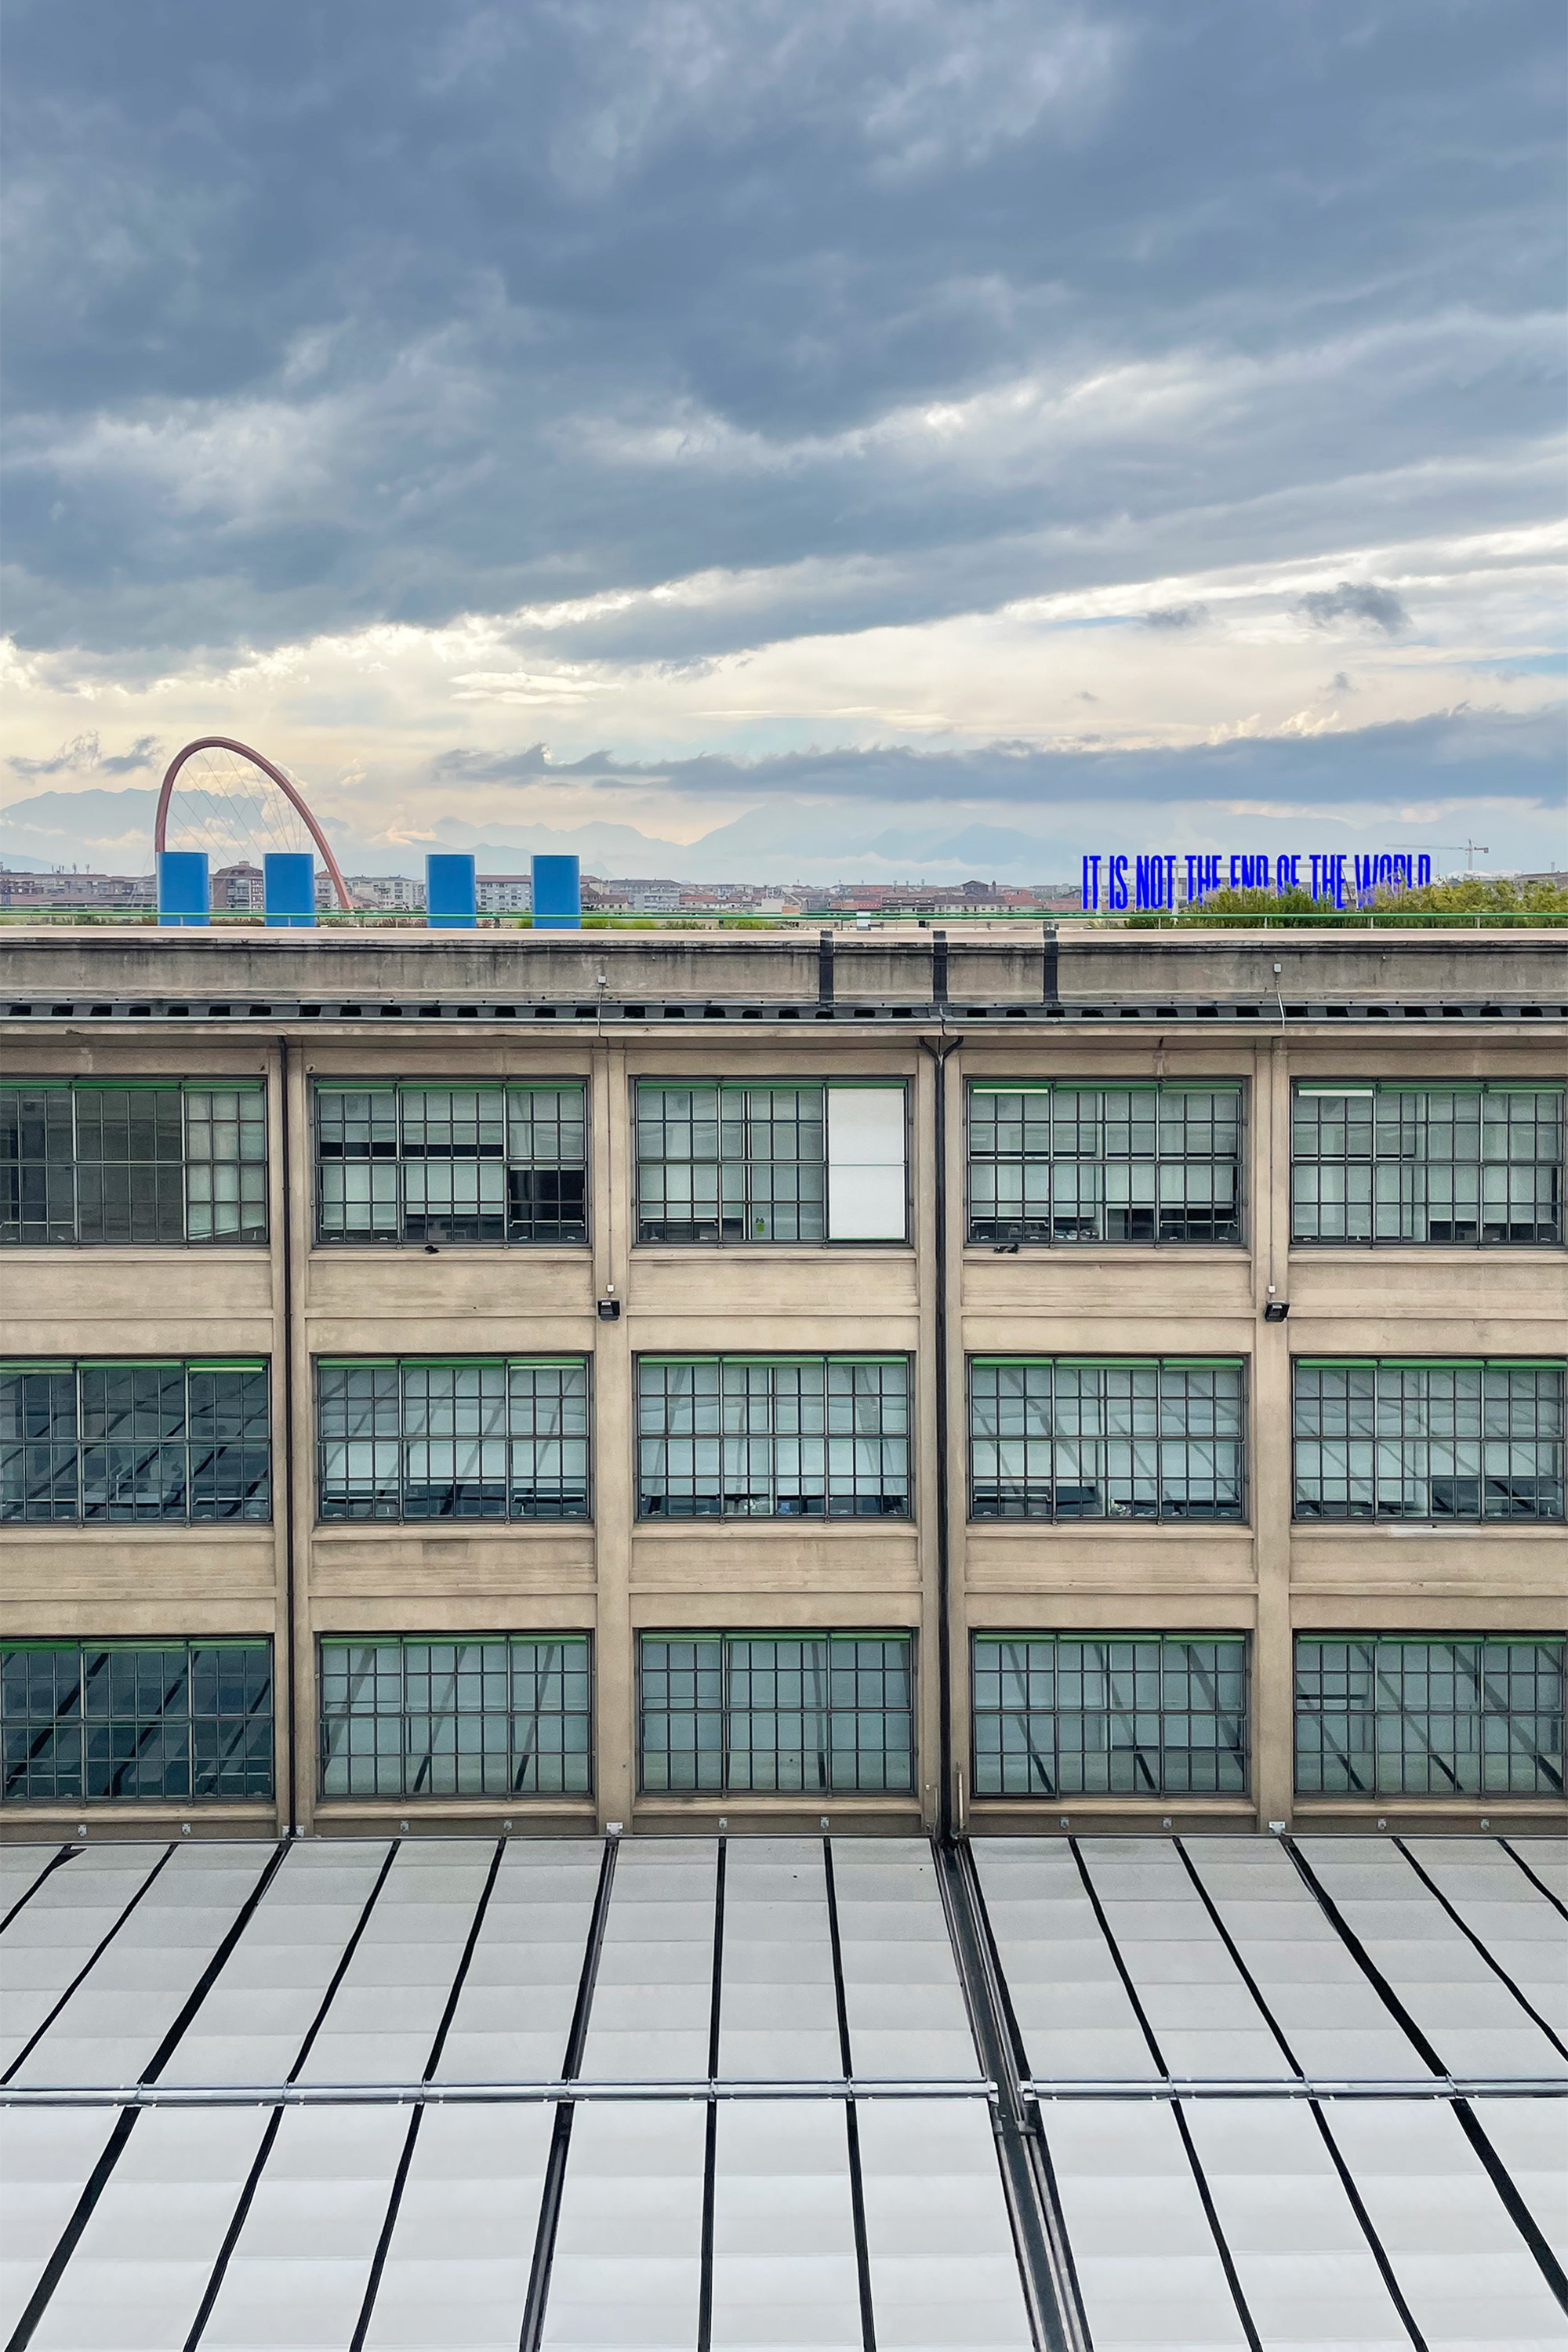 Die Fabrik wurde ursprünglich 1923 von Matté Trucco für Fiat errichtet und bis 2003 durch Renzo Piano umgebaut.